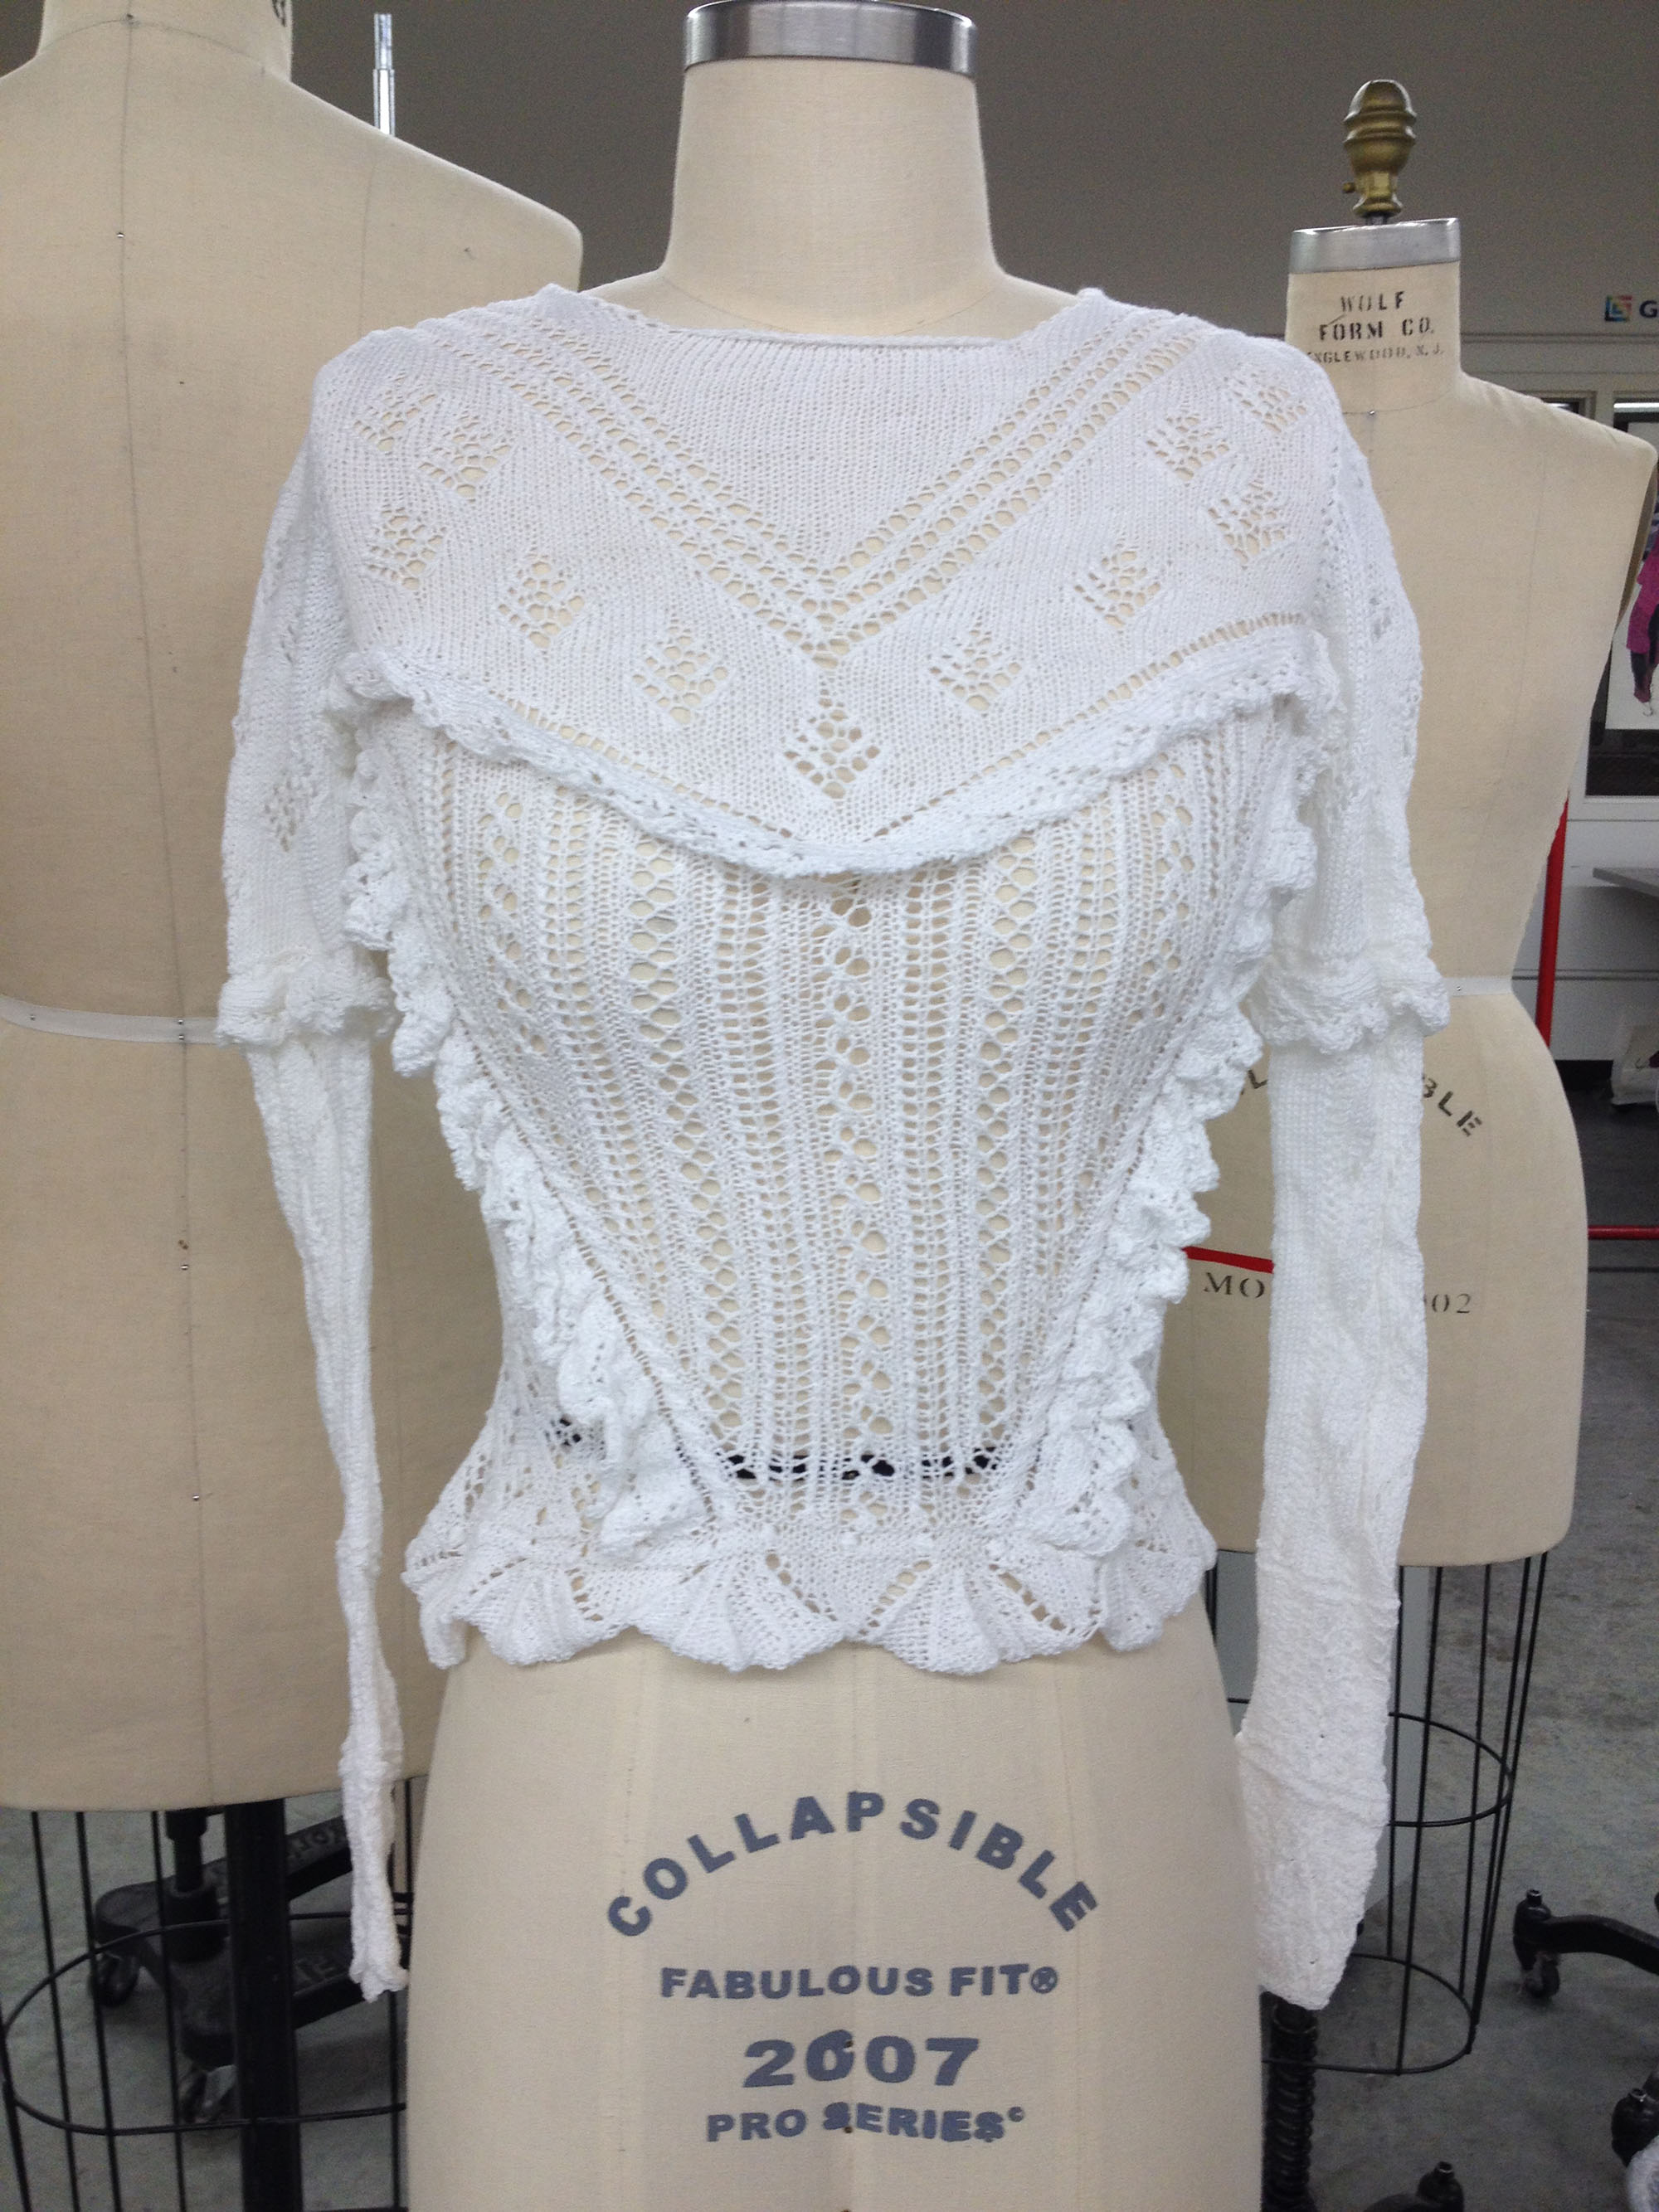 Victorian lace blouse